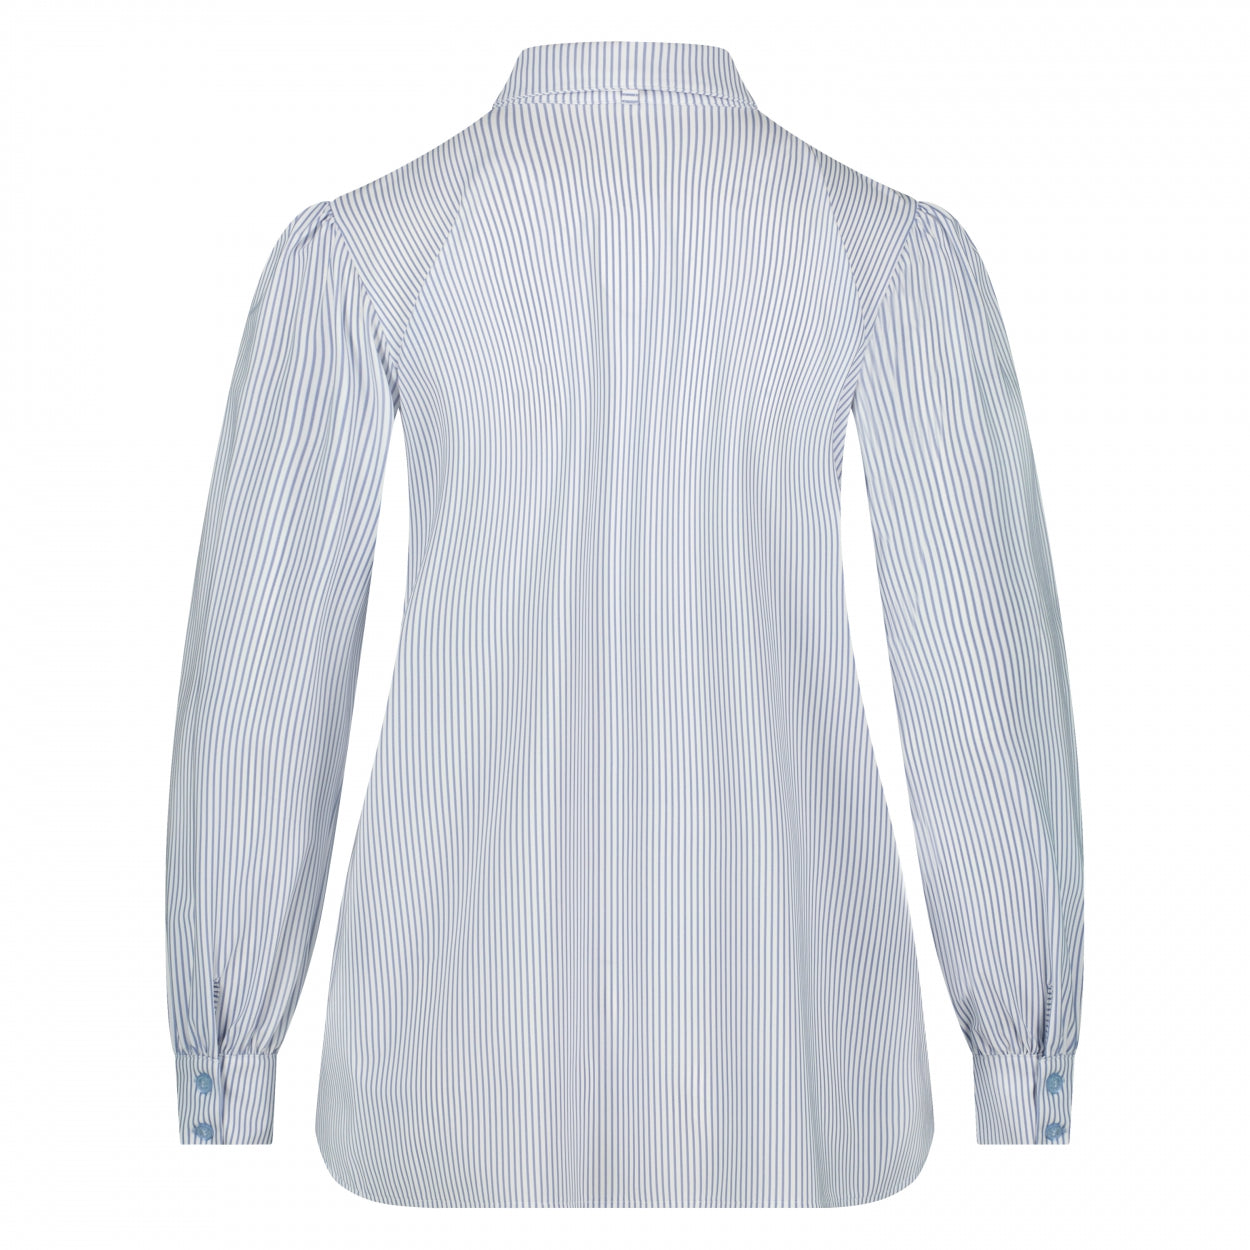 Shirt Puffed | Stripe White Navy